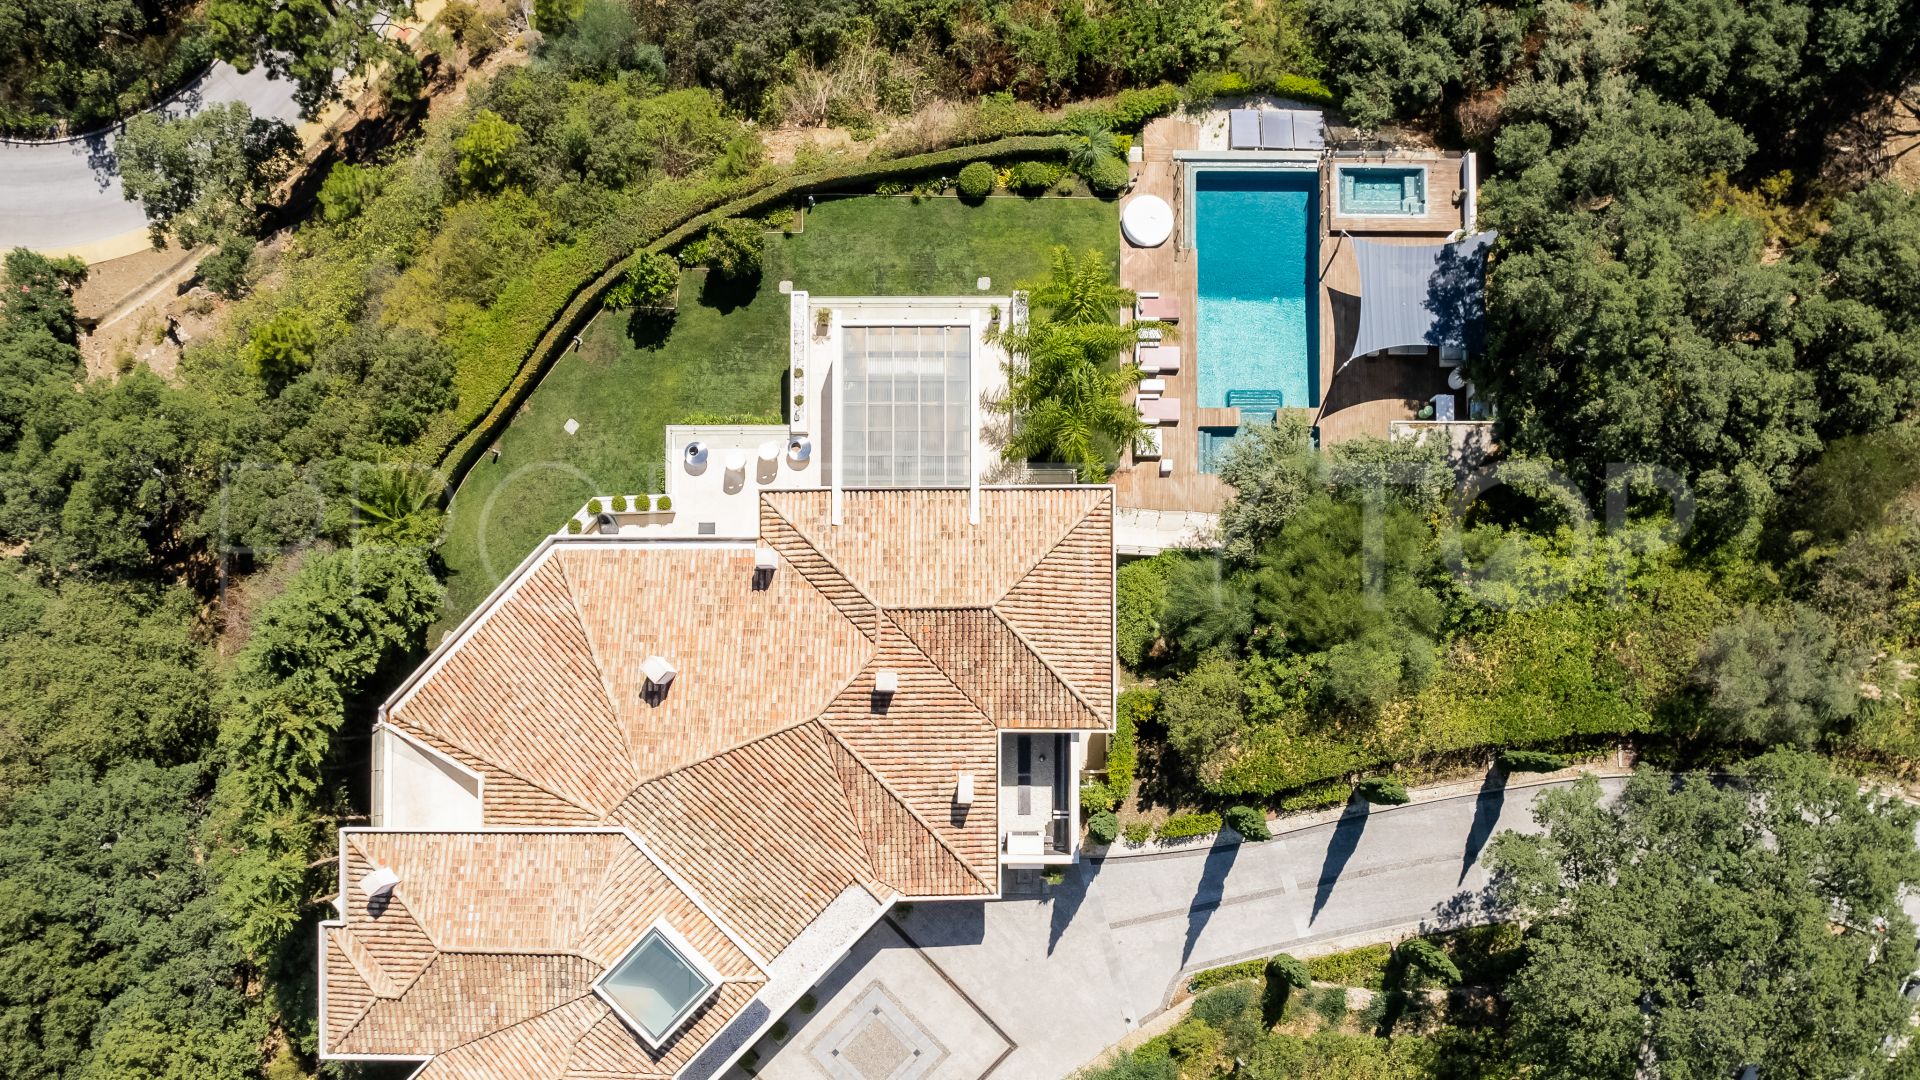 5 bedrooms villa in La Zagaleta for sale